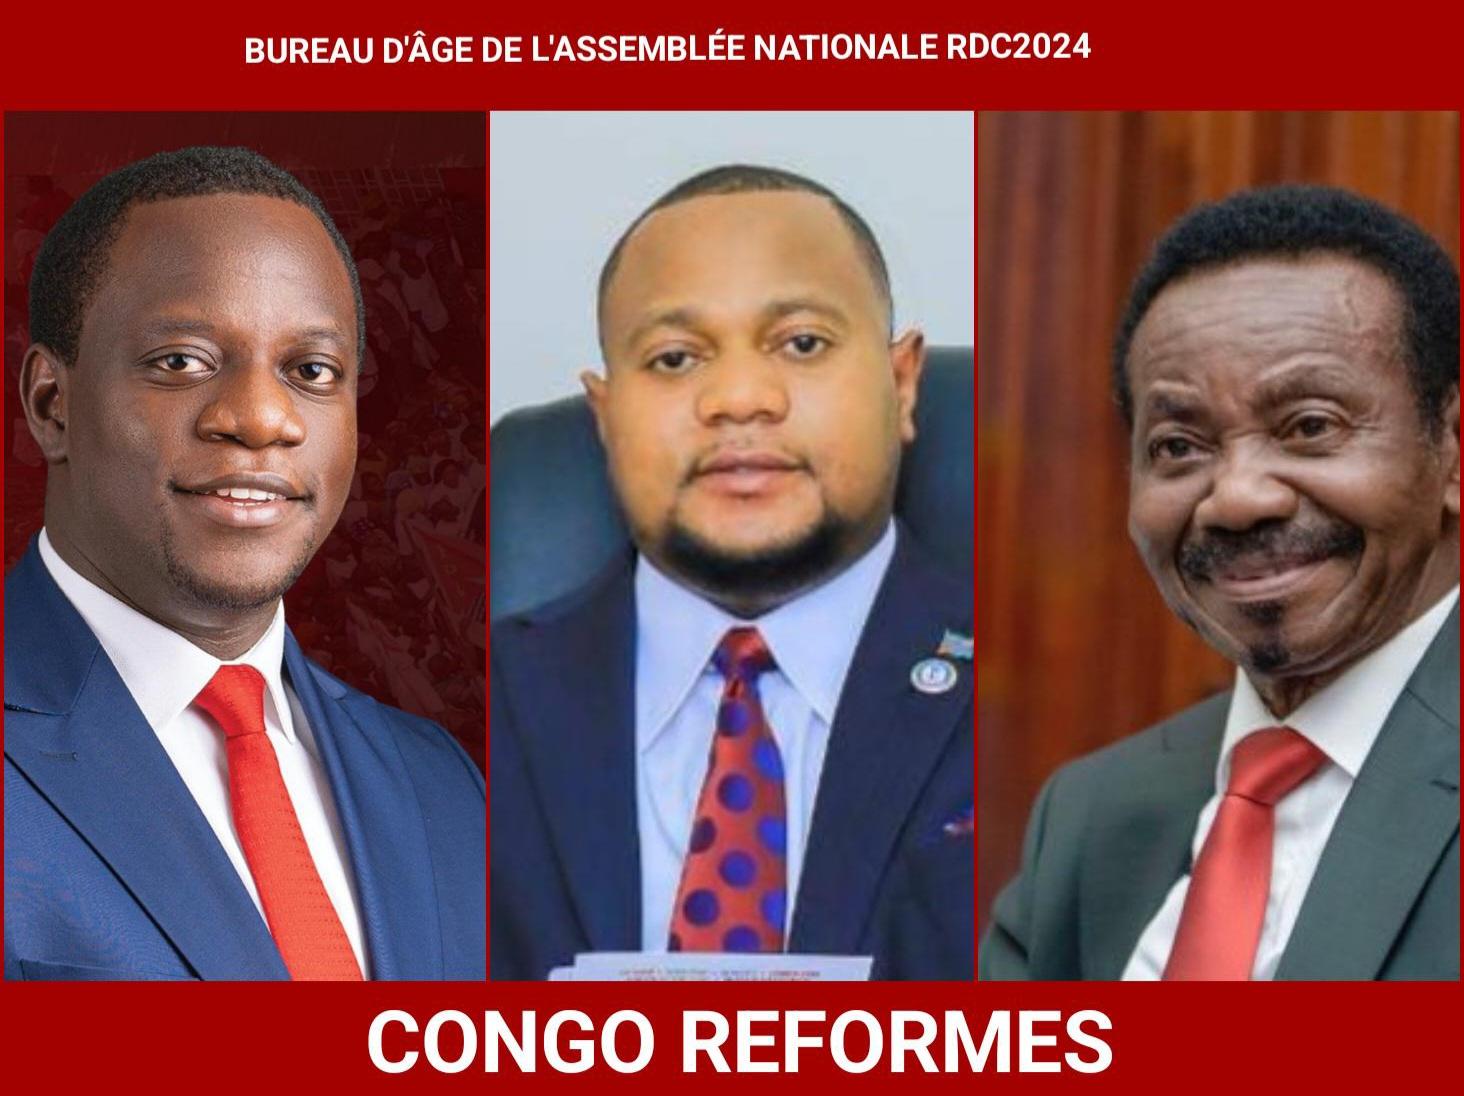 RDC/législature 2024-2029: voici la composition du prochain bureau d’âge de l’assemblée nationale